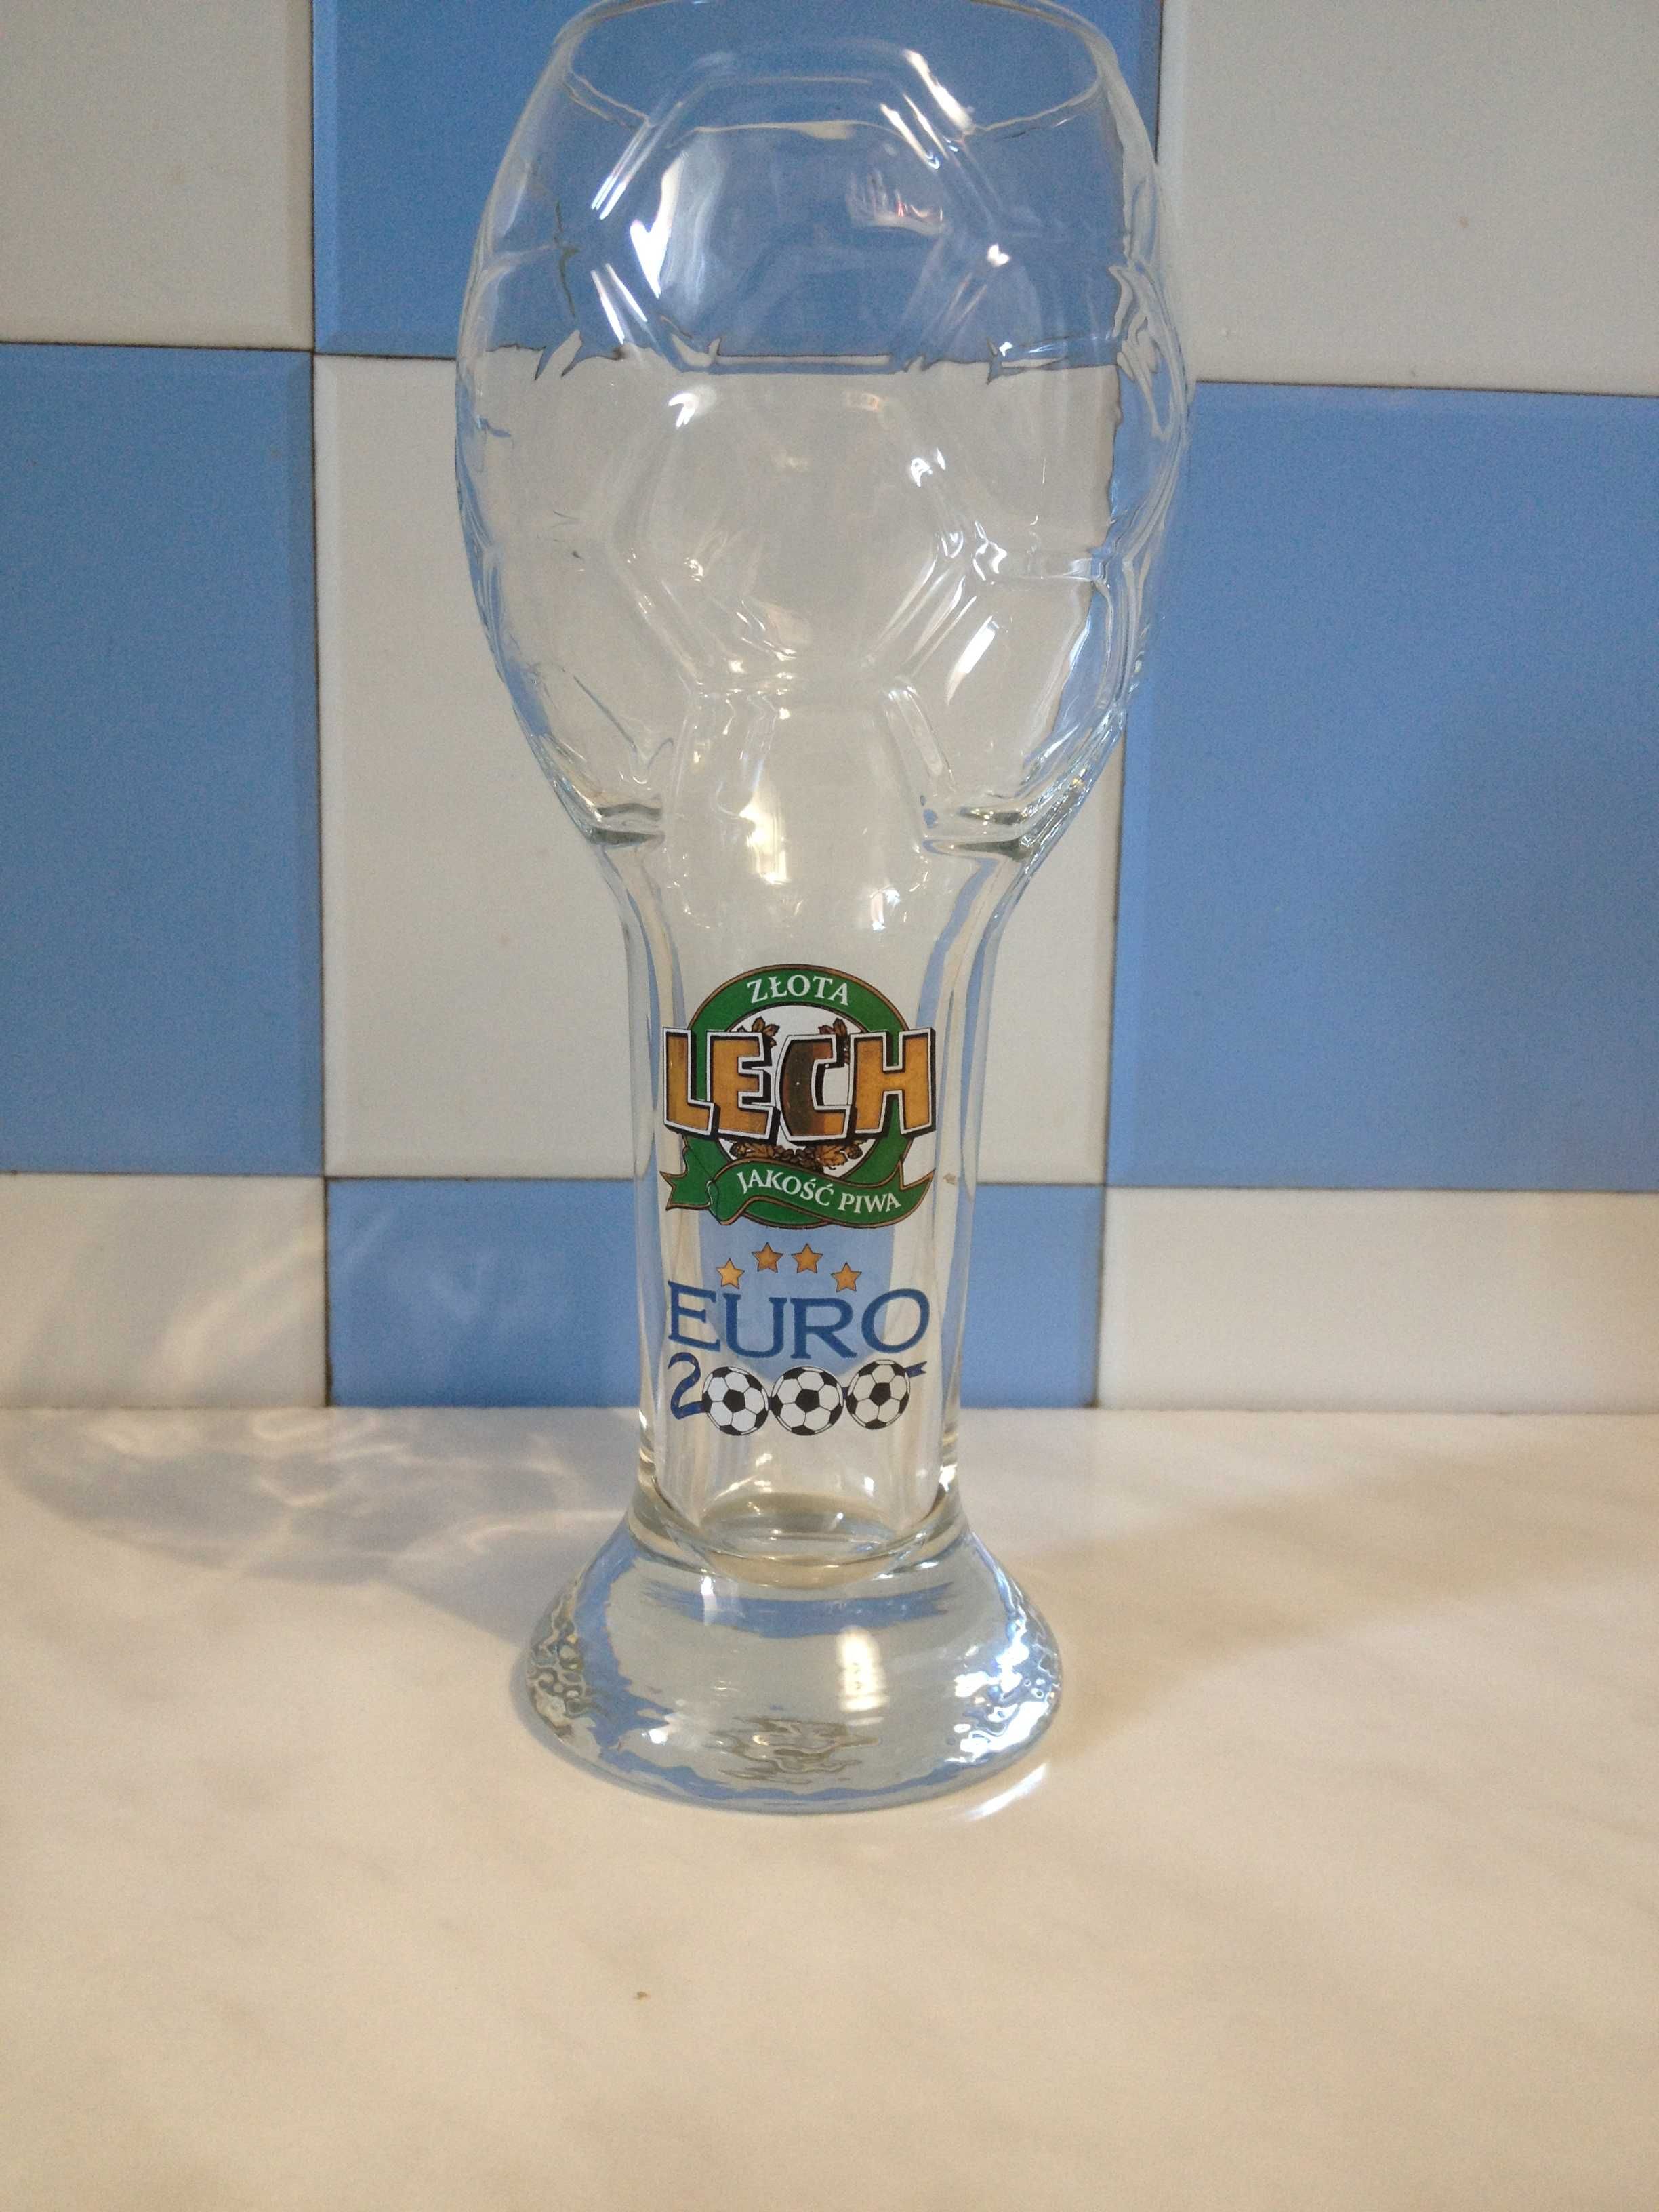 Pokal kolekcjonerski Lech 2000 limitowana edycja Euro 2000